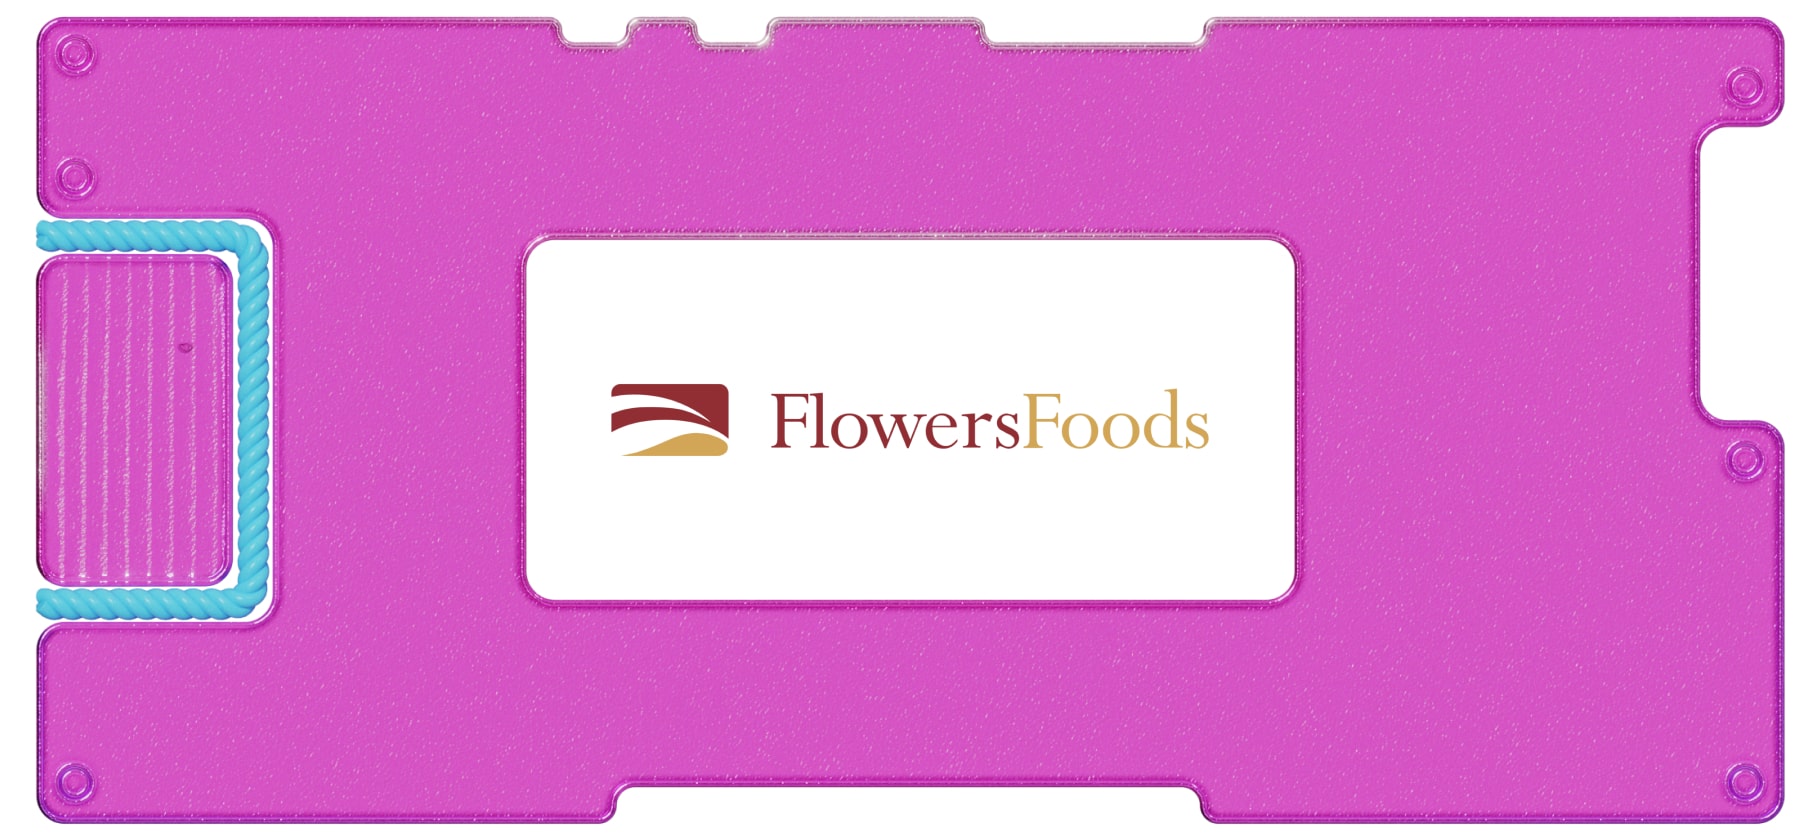 Инвестидея: Flowers Foods, потому что выпечка всегда в моде